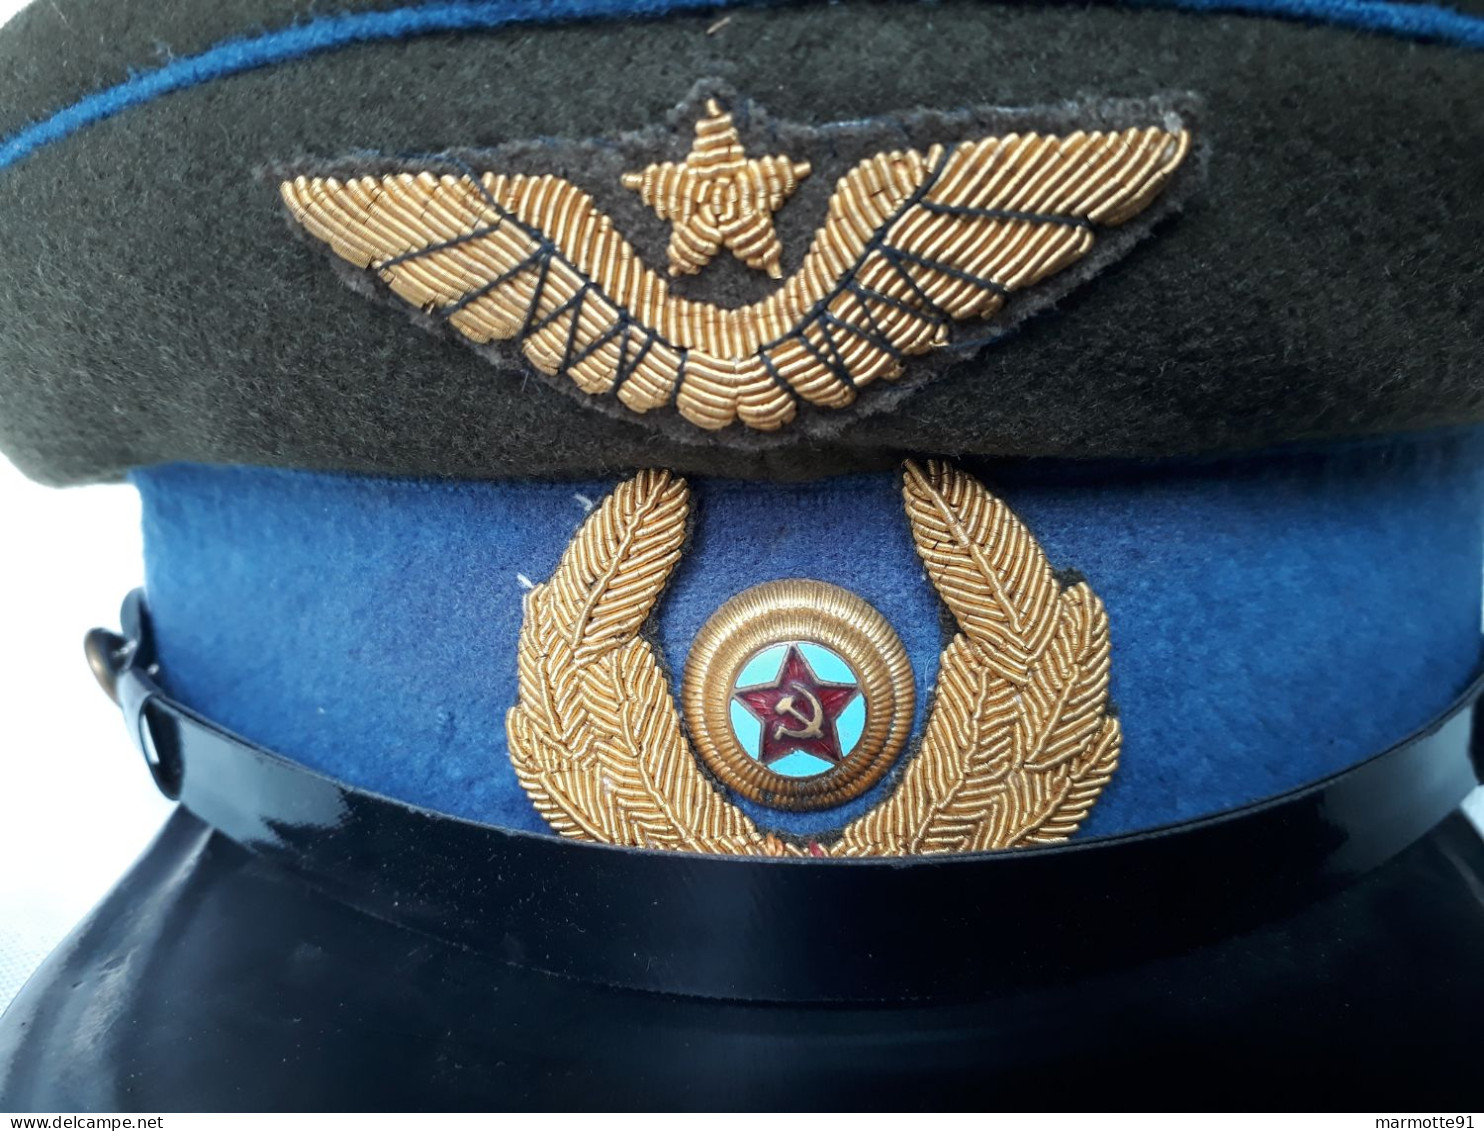 CASQUETTE OFFICIER SOVIETIQUE AVIATION PILOTE ARMEE ROUGE WW2 SOVIET PEAKED CAP PILOT 1943 AIR FORCE - Copricapi